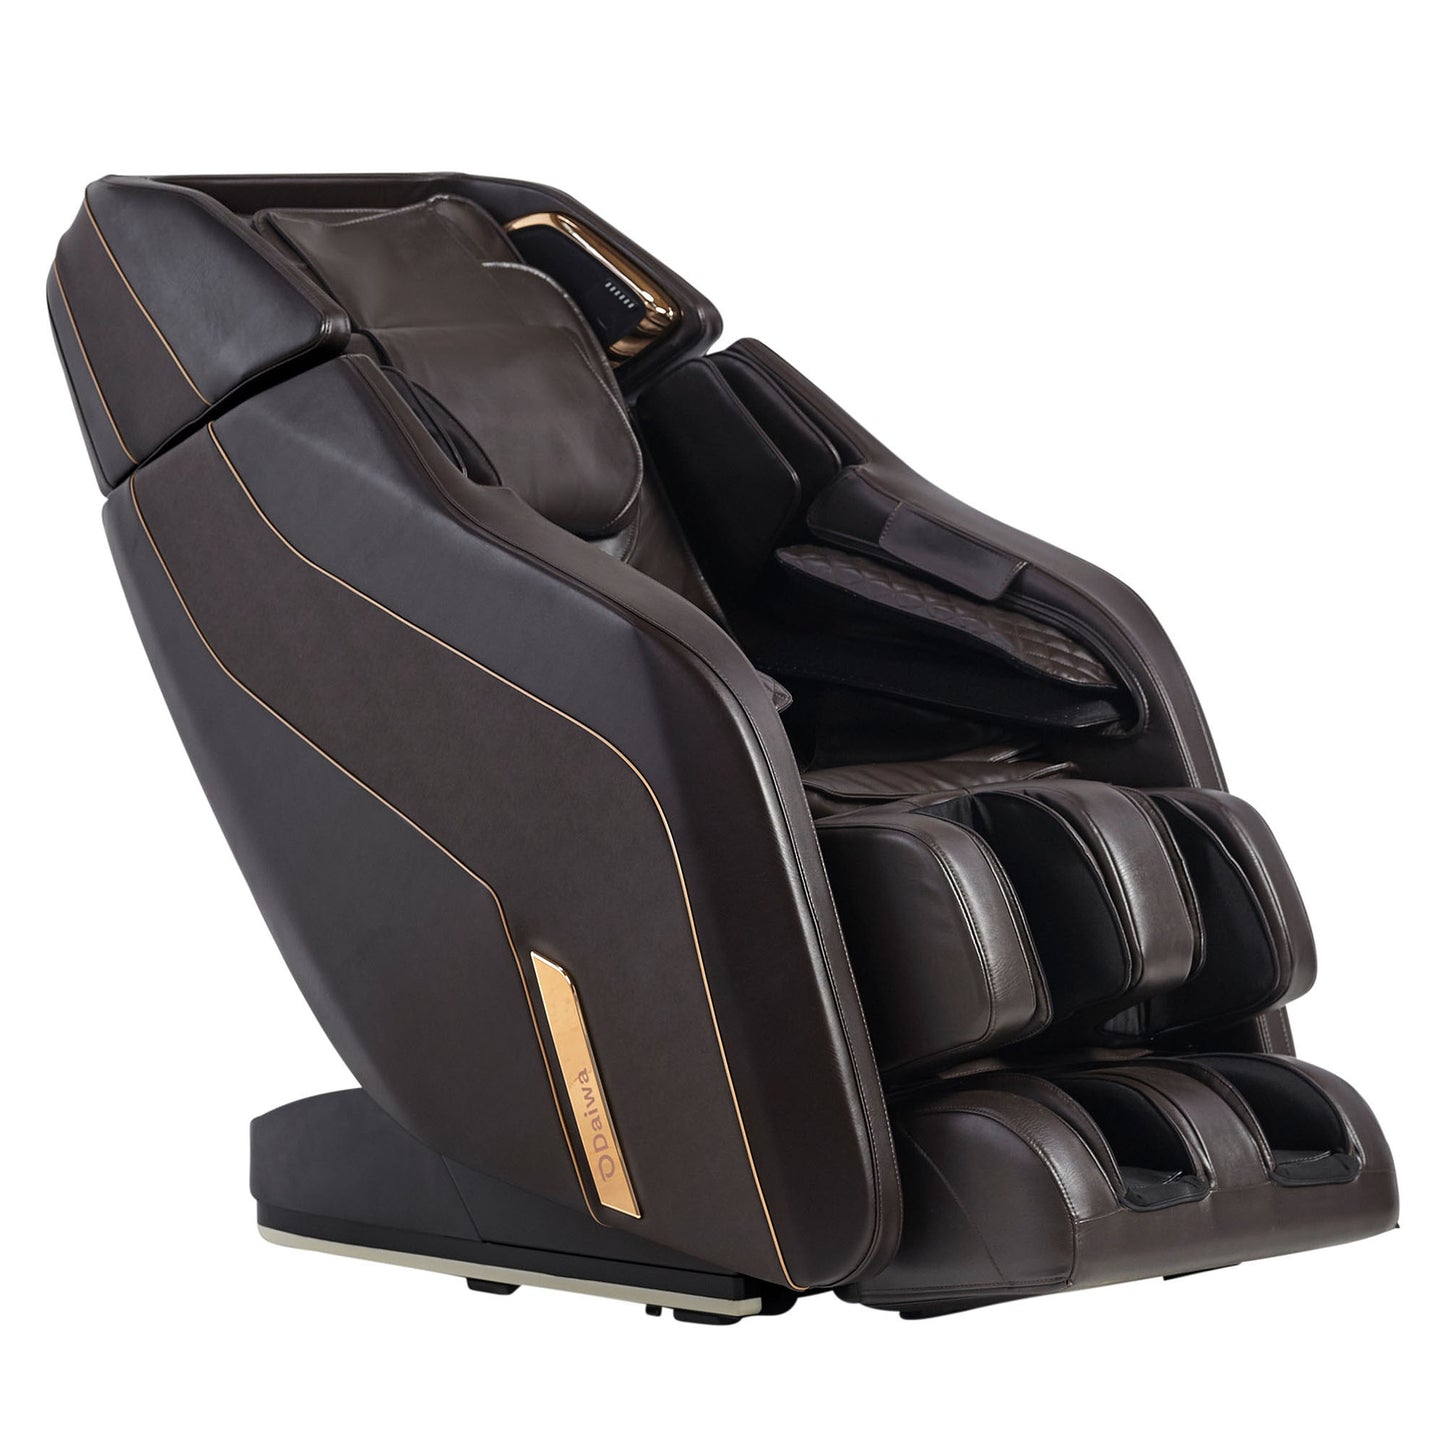 Daiwa Pegasus 2 Smart Massage Chair